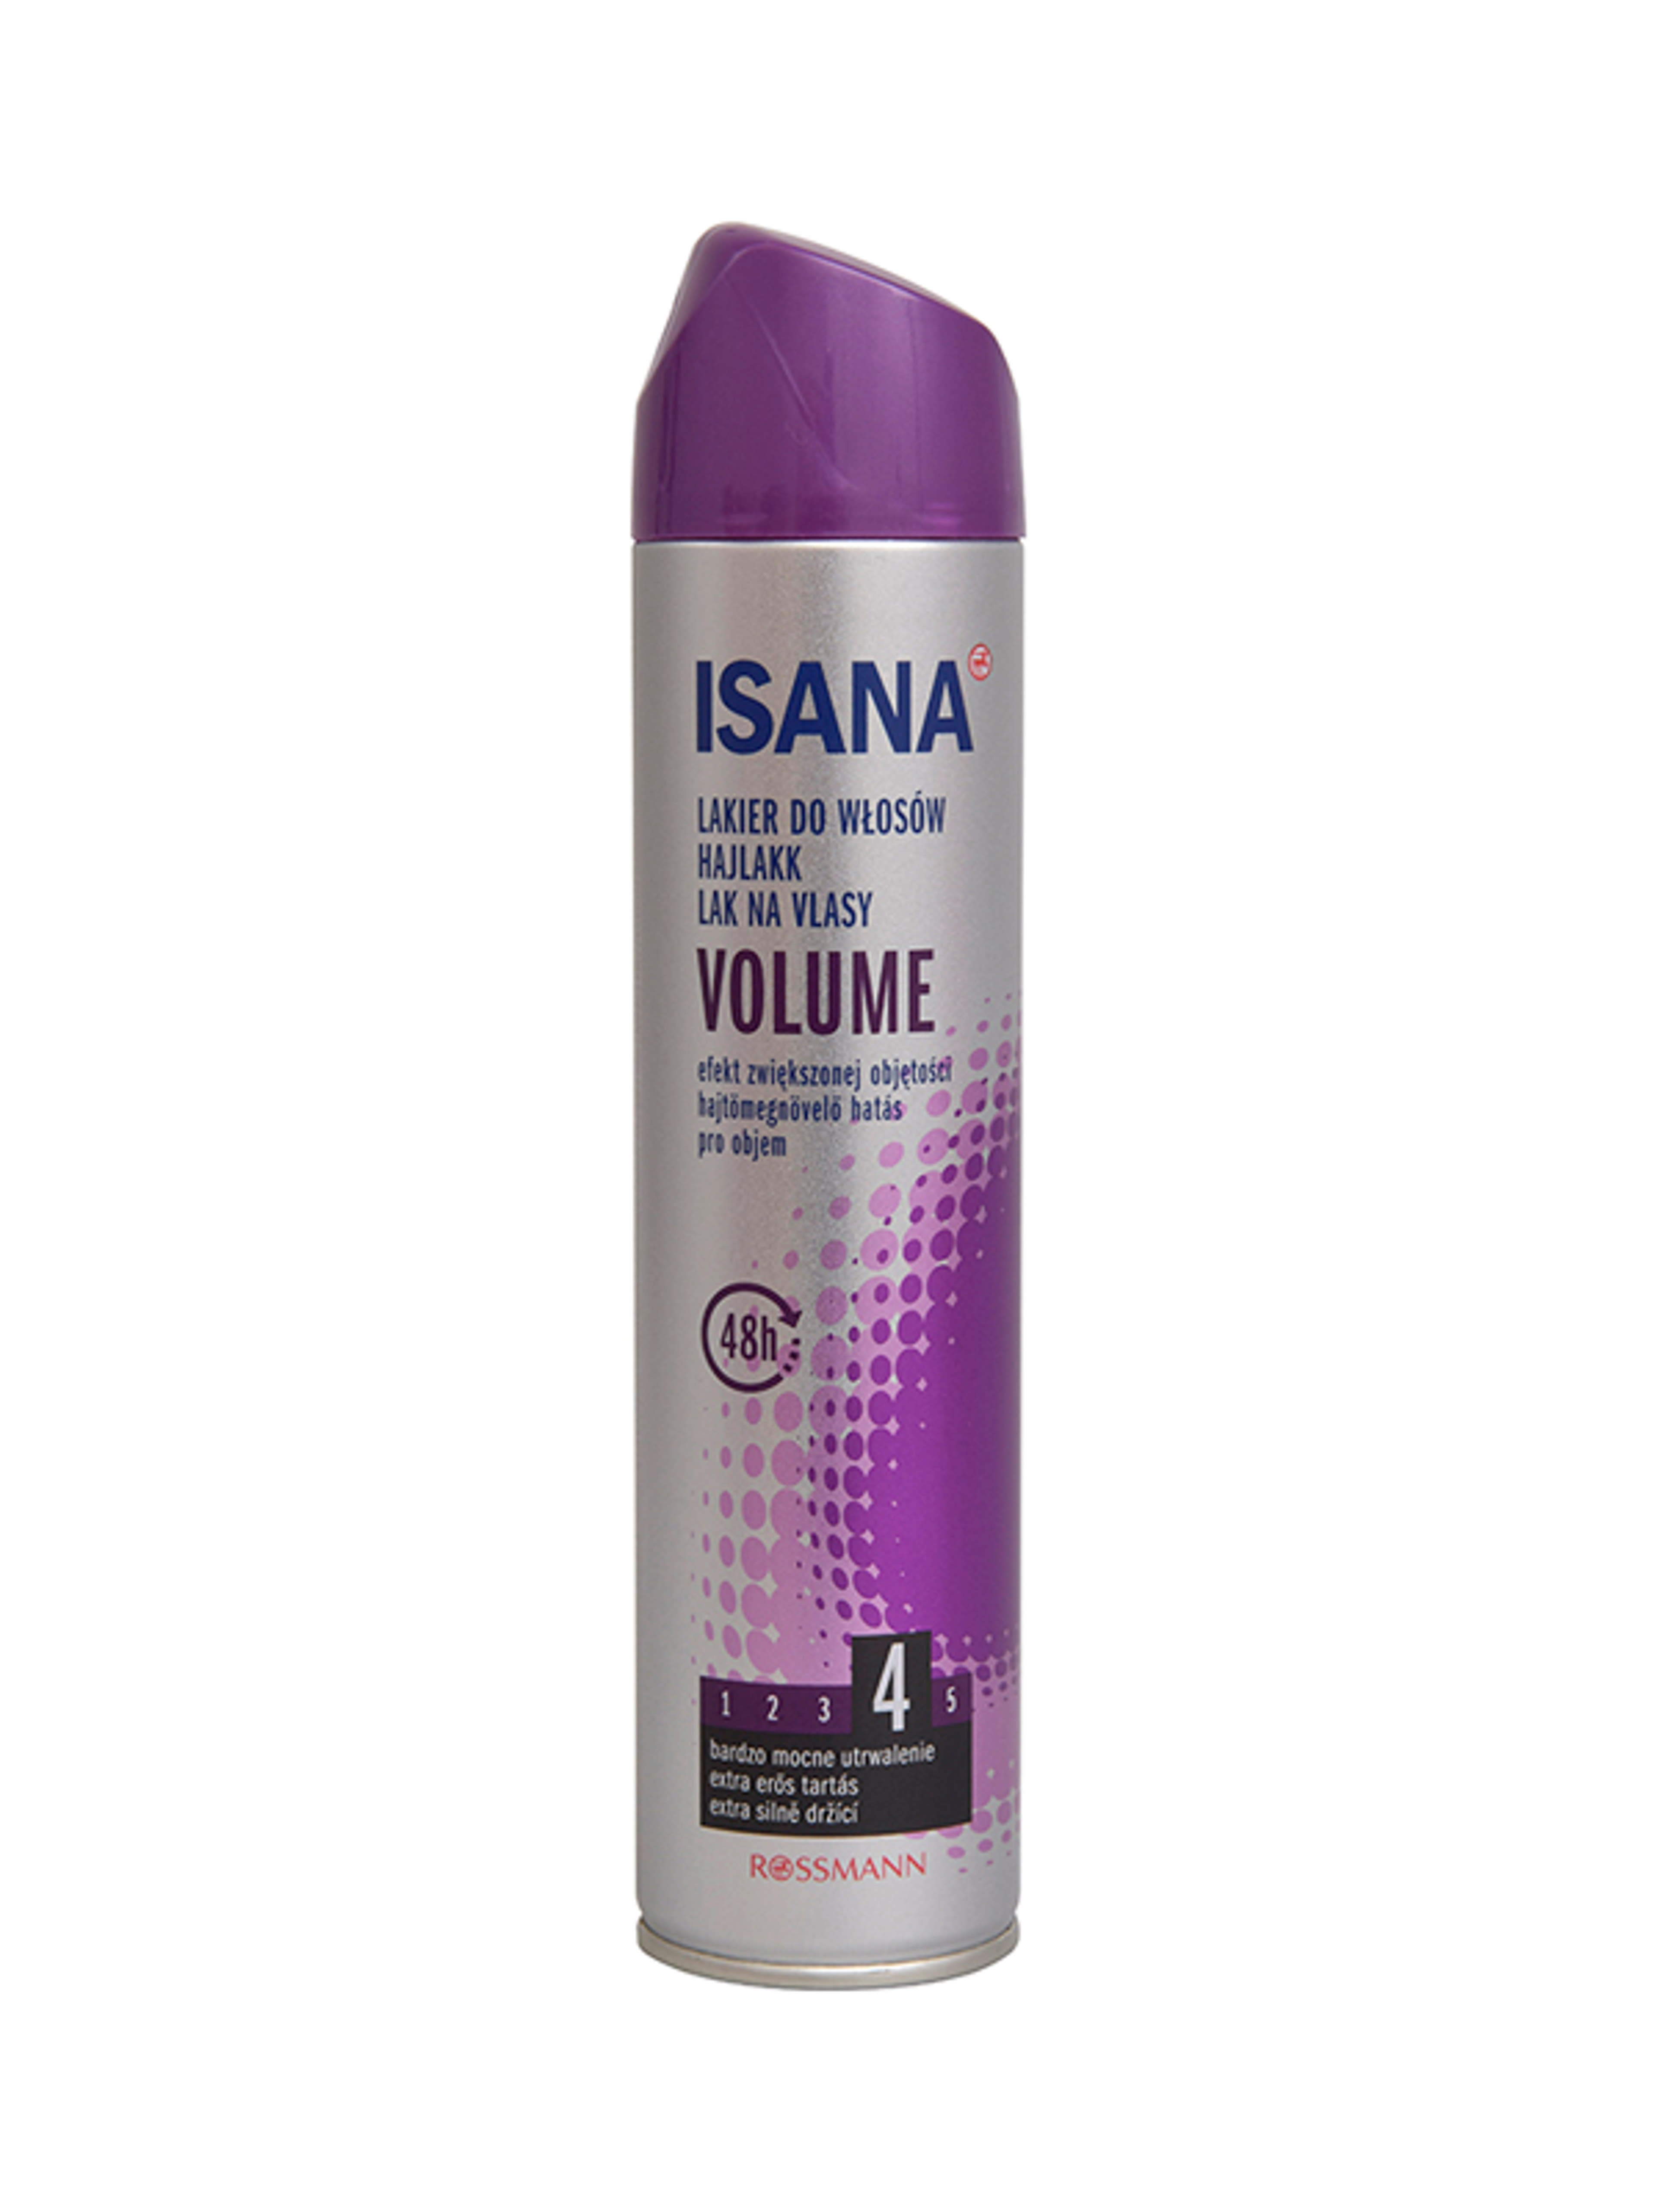 Isana Hair Volume Up hajlakk - 250 ml